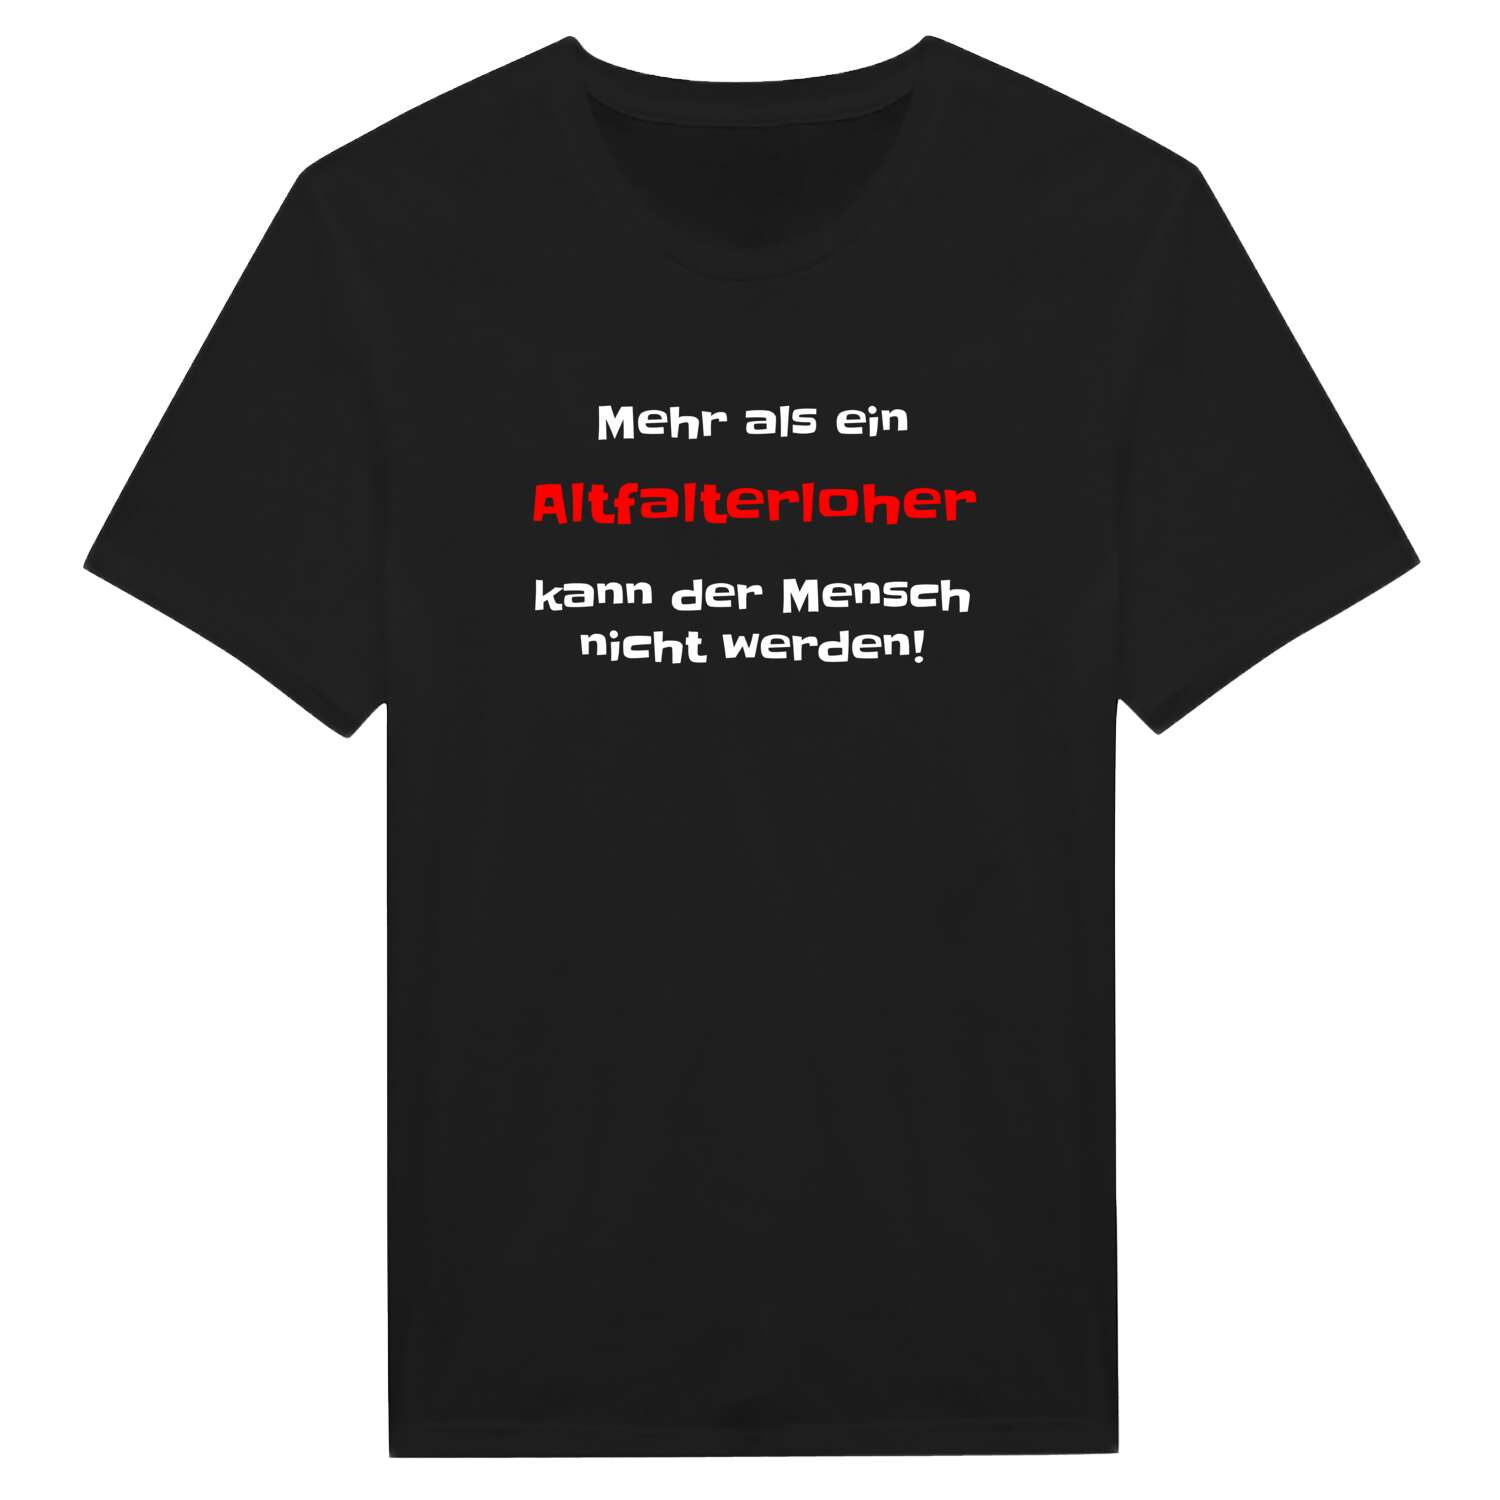 Altfalterloh T-Shirt »Mehr als ein«